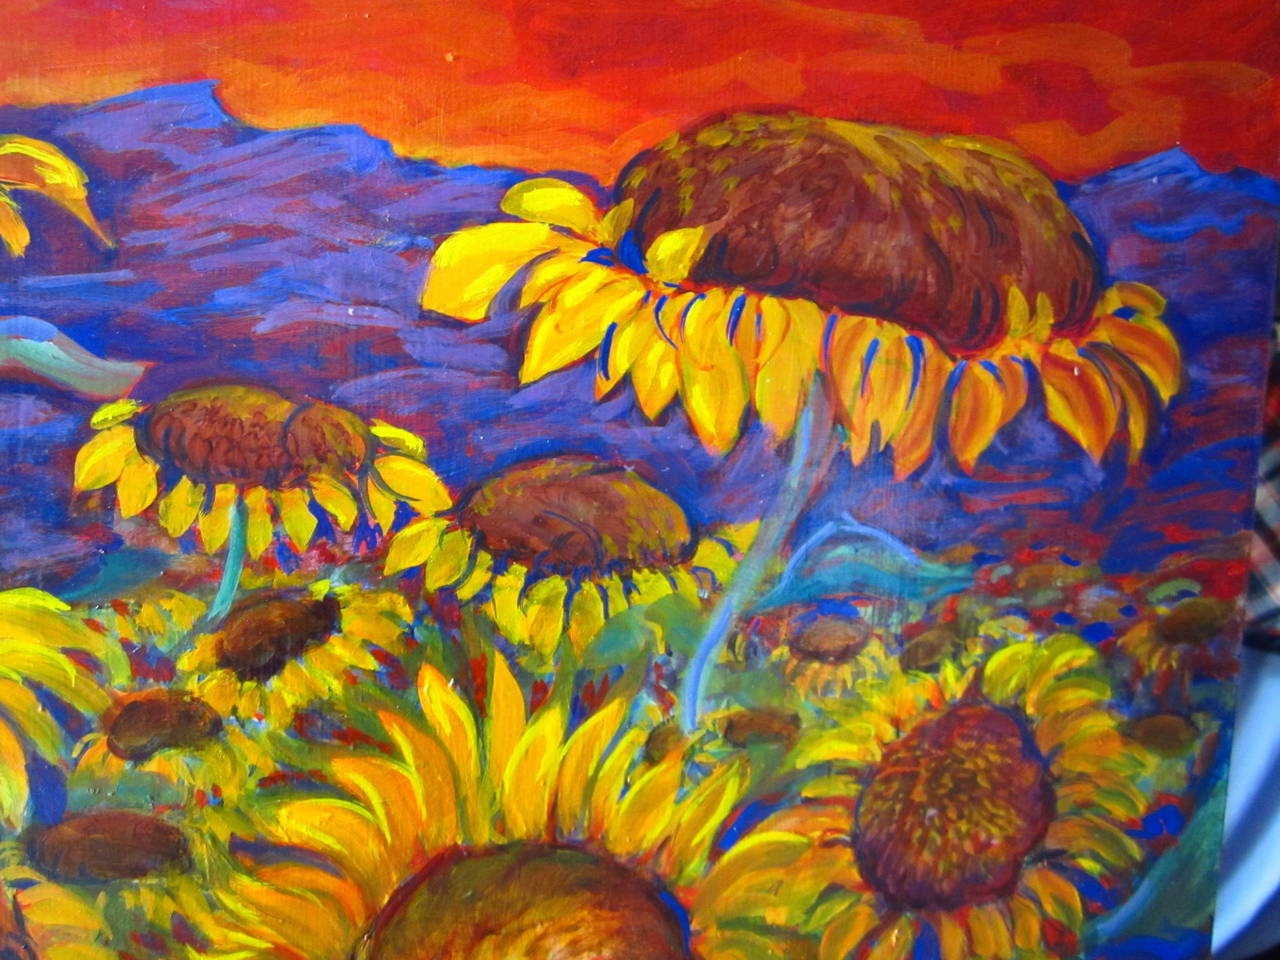 Sunflower fields est une peinture réalisée par Evelyne Ballestra, une artiste contemporaine française. Cette pièce fait partie d'une série de fleurs, définies par leurs couleurs vives distinctes, leurs matériaux satinés, soyeux, vibrants et leur